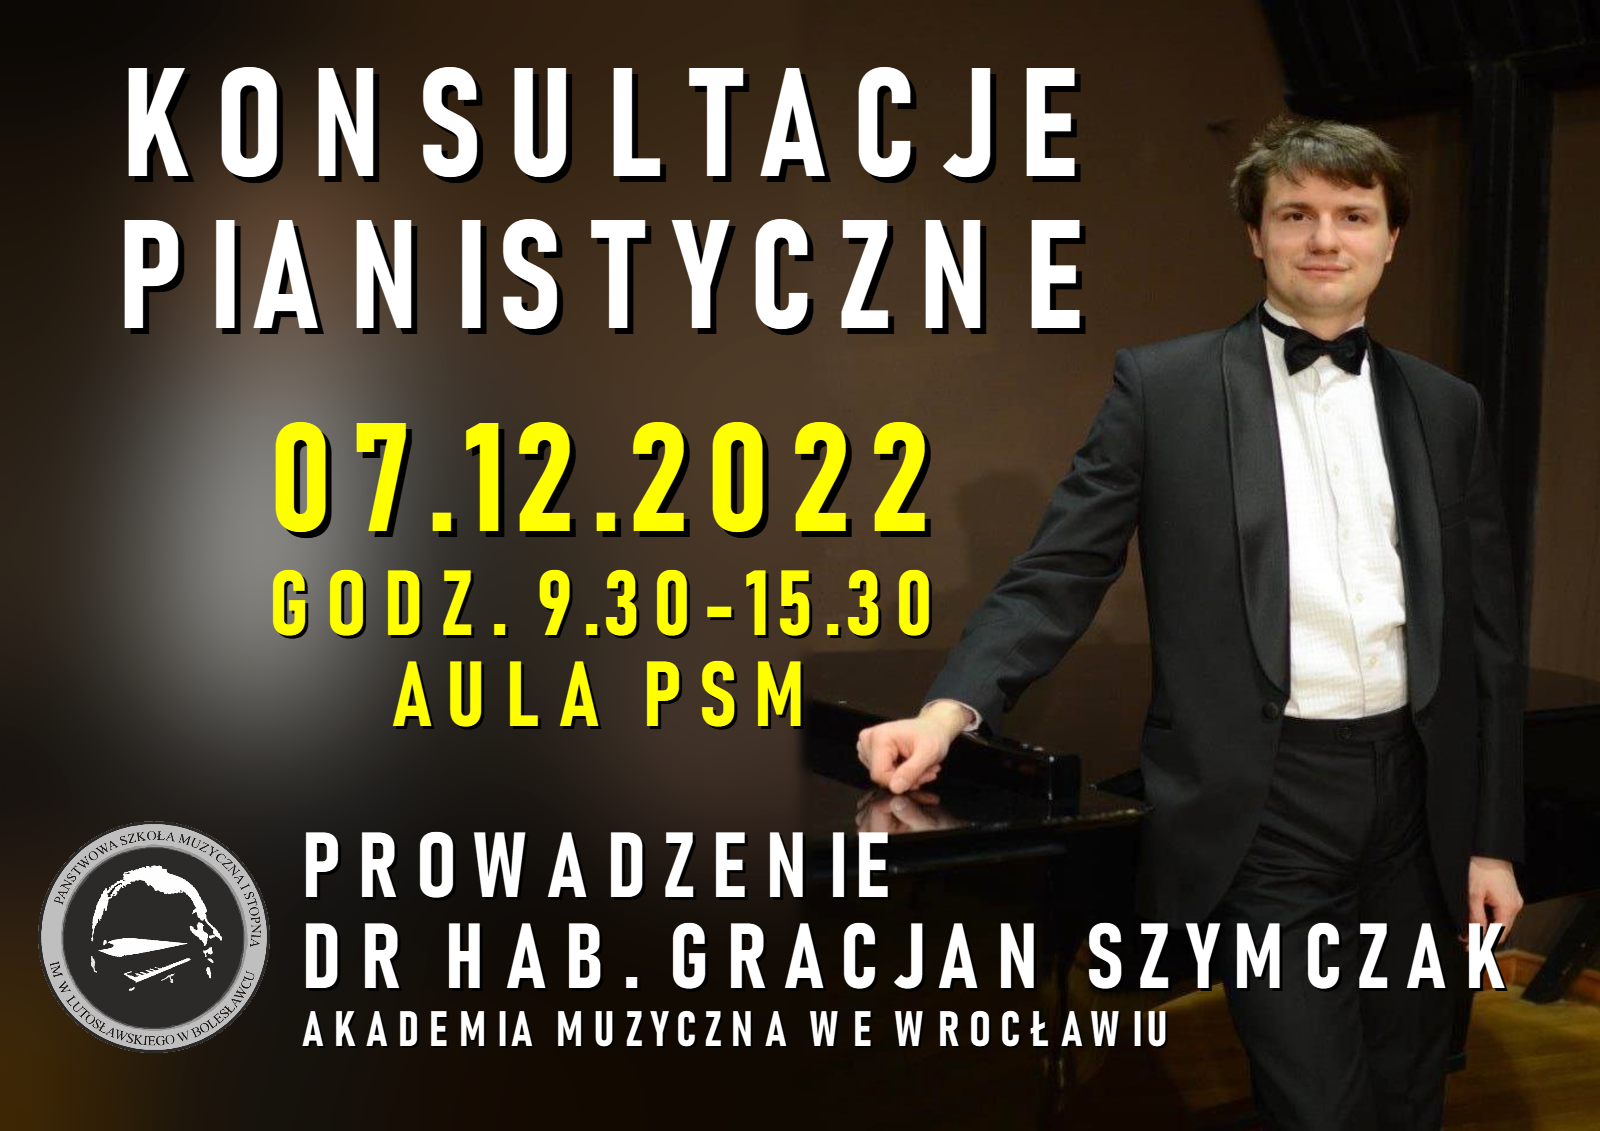 Zdjęcie przedstawiające prowadzącego konsultacje pianistyczne w pozycji stojącej w uroczystym stroju, czyli dr hab. Gracjana Szymczaka opartego ręką o fortepian. W tle pomieszczenie w odcieniach brązu. Na zdjęciu znajduje się napis treści: "Konsultacje pianistyczne odbędą się 7 grudnia 2022 r. w godz. 9.30-15.30 w auli PSM. Konsultacje prowadzi dr hab. Gracjan Szymczak z Akademii Muzycznej we Wrocławiu".